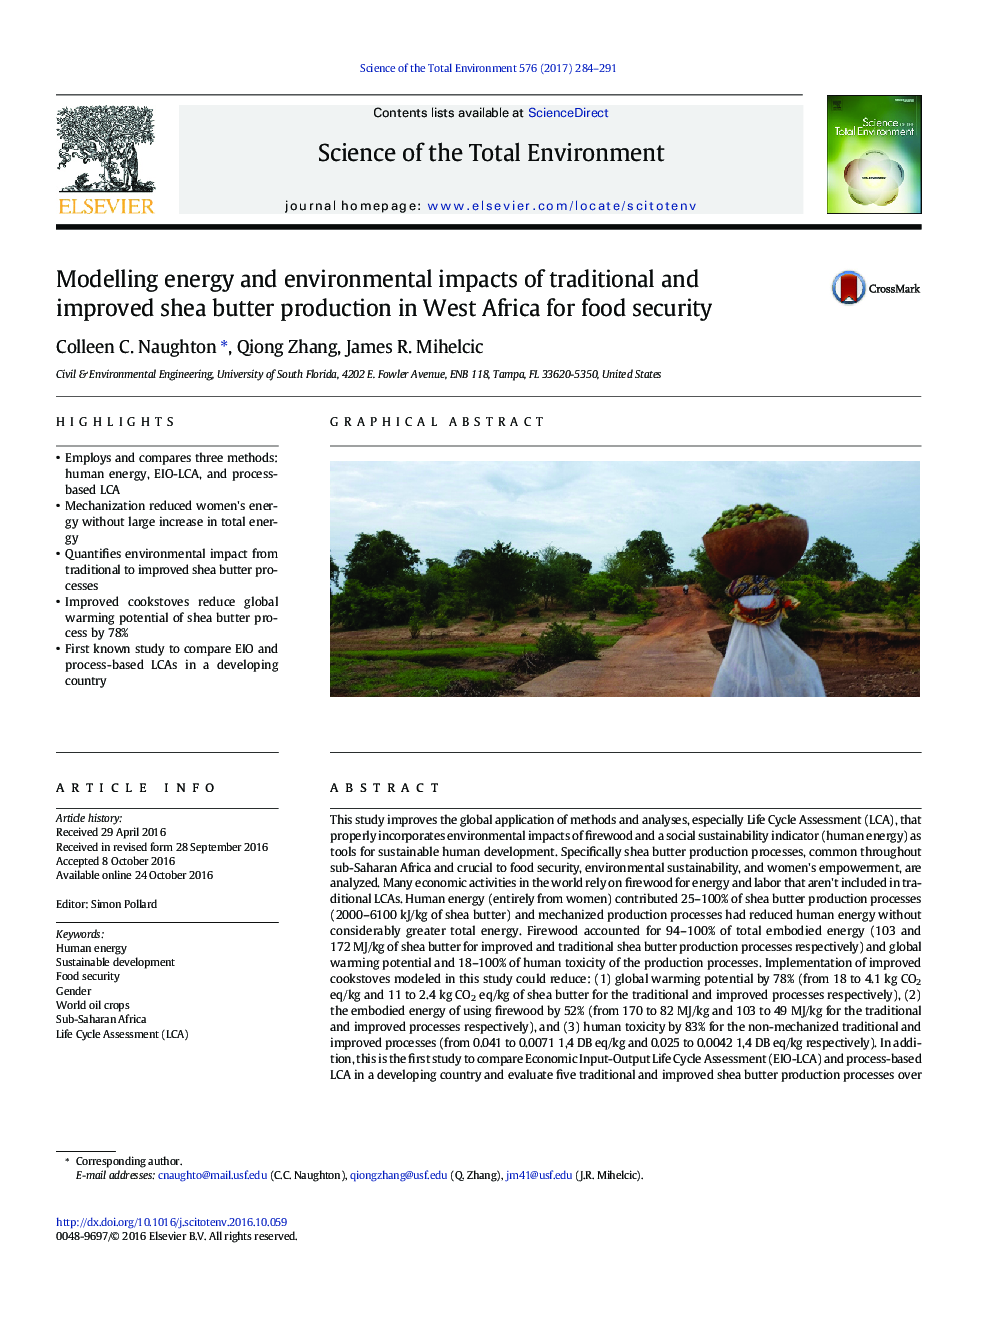 مدل سازی انرژی و اثرات زیست محیطی تولید سنتی و بهبود کره شیا در غرب آفریقا برای امنیت غذایی 